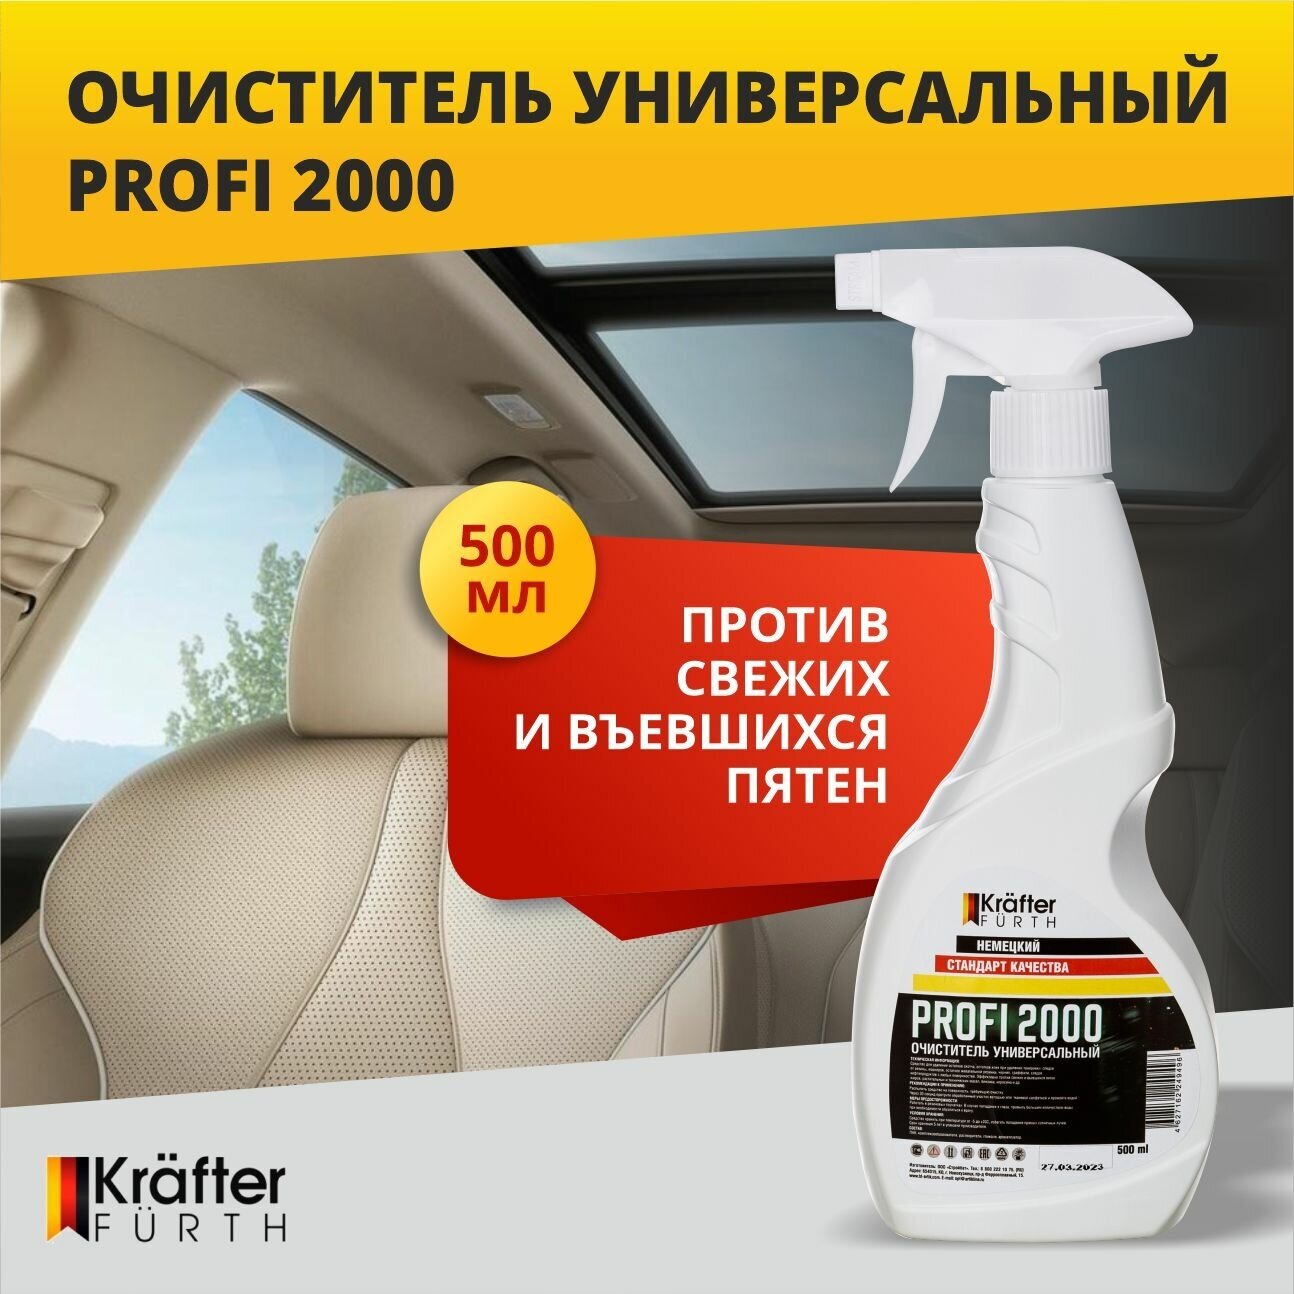 Очиститель универсальный для салона автомобиля и интерьера Profi 2000 Krafter Furth 500 мл спрей.